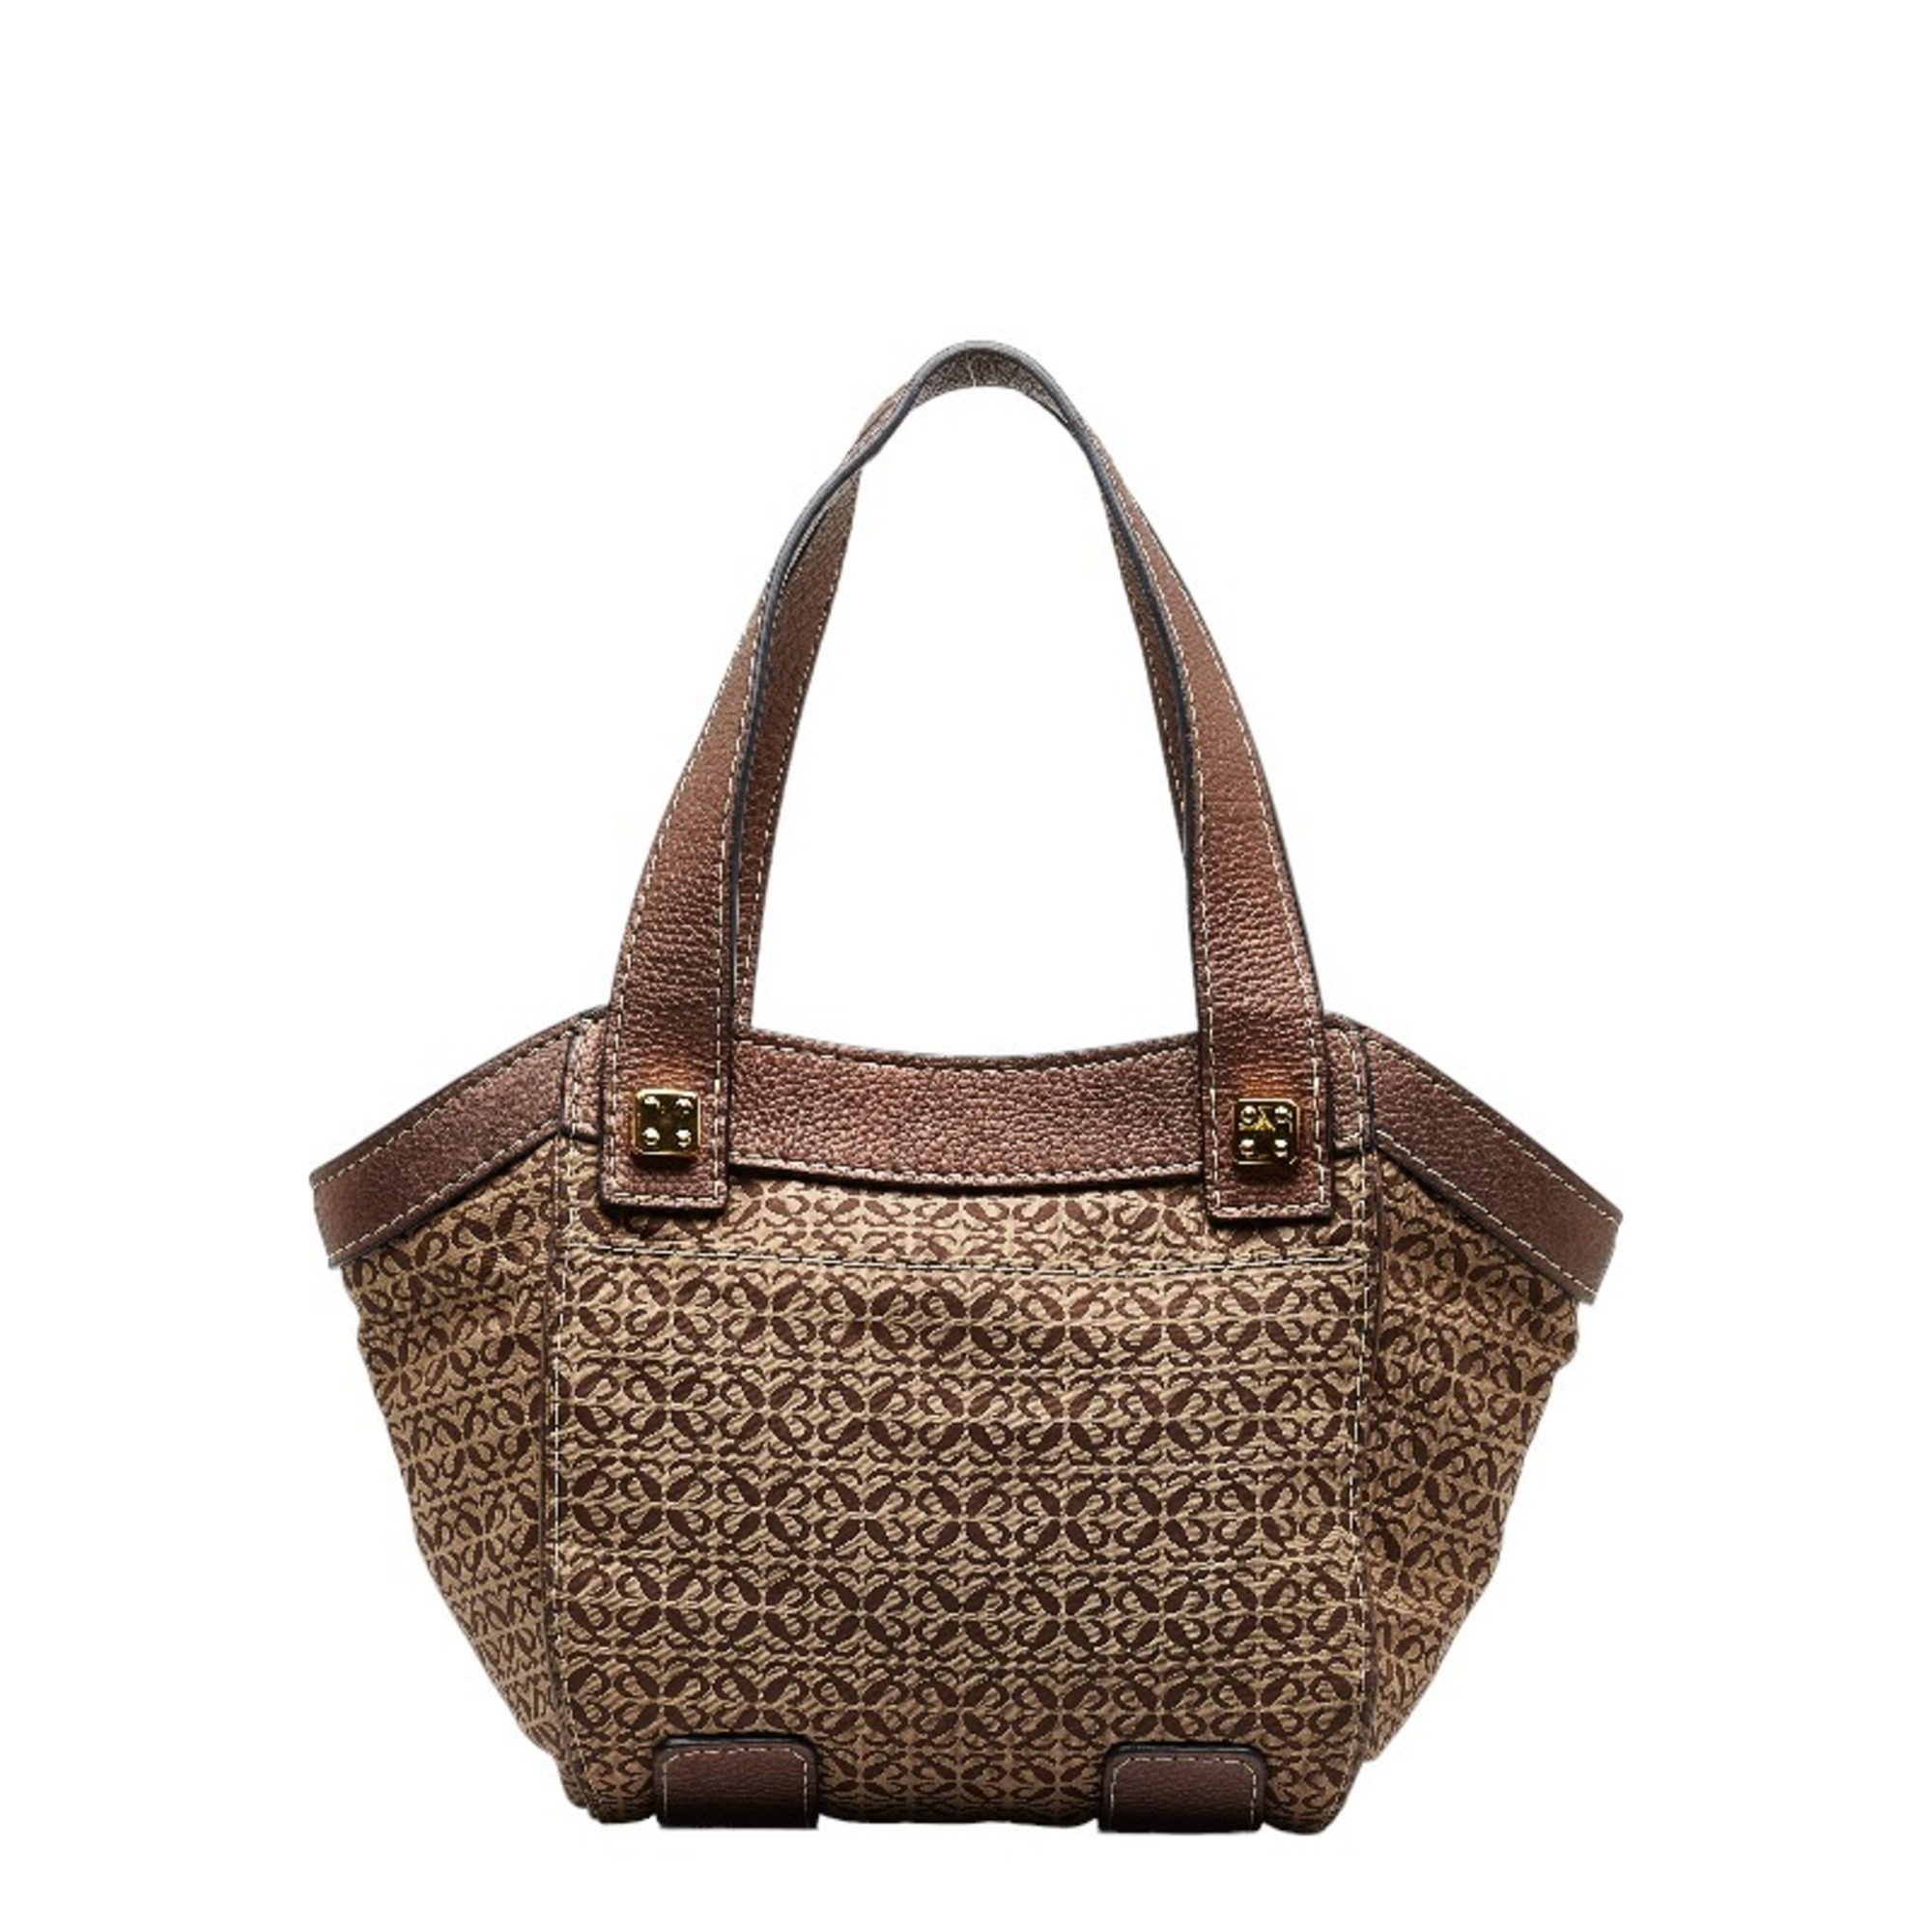 LOEWE New Roadline Handbag Brown Canvas Leather Ladies